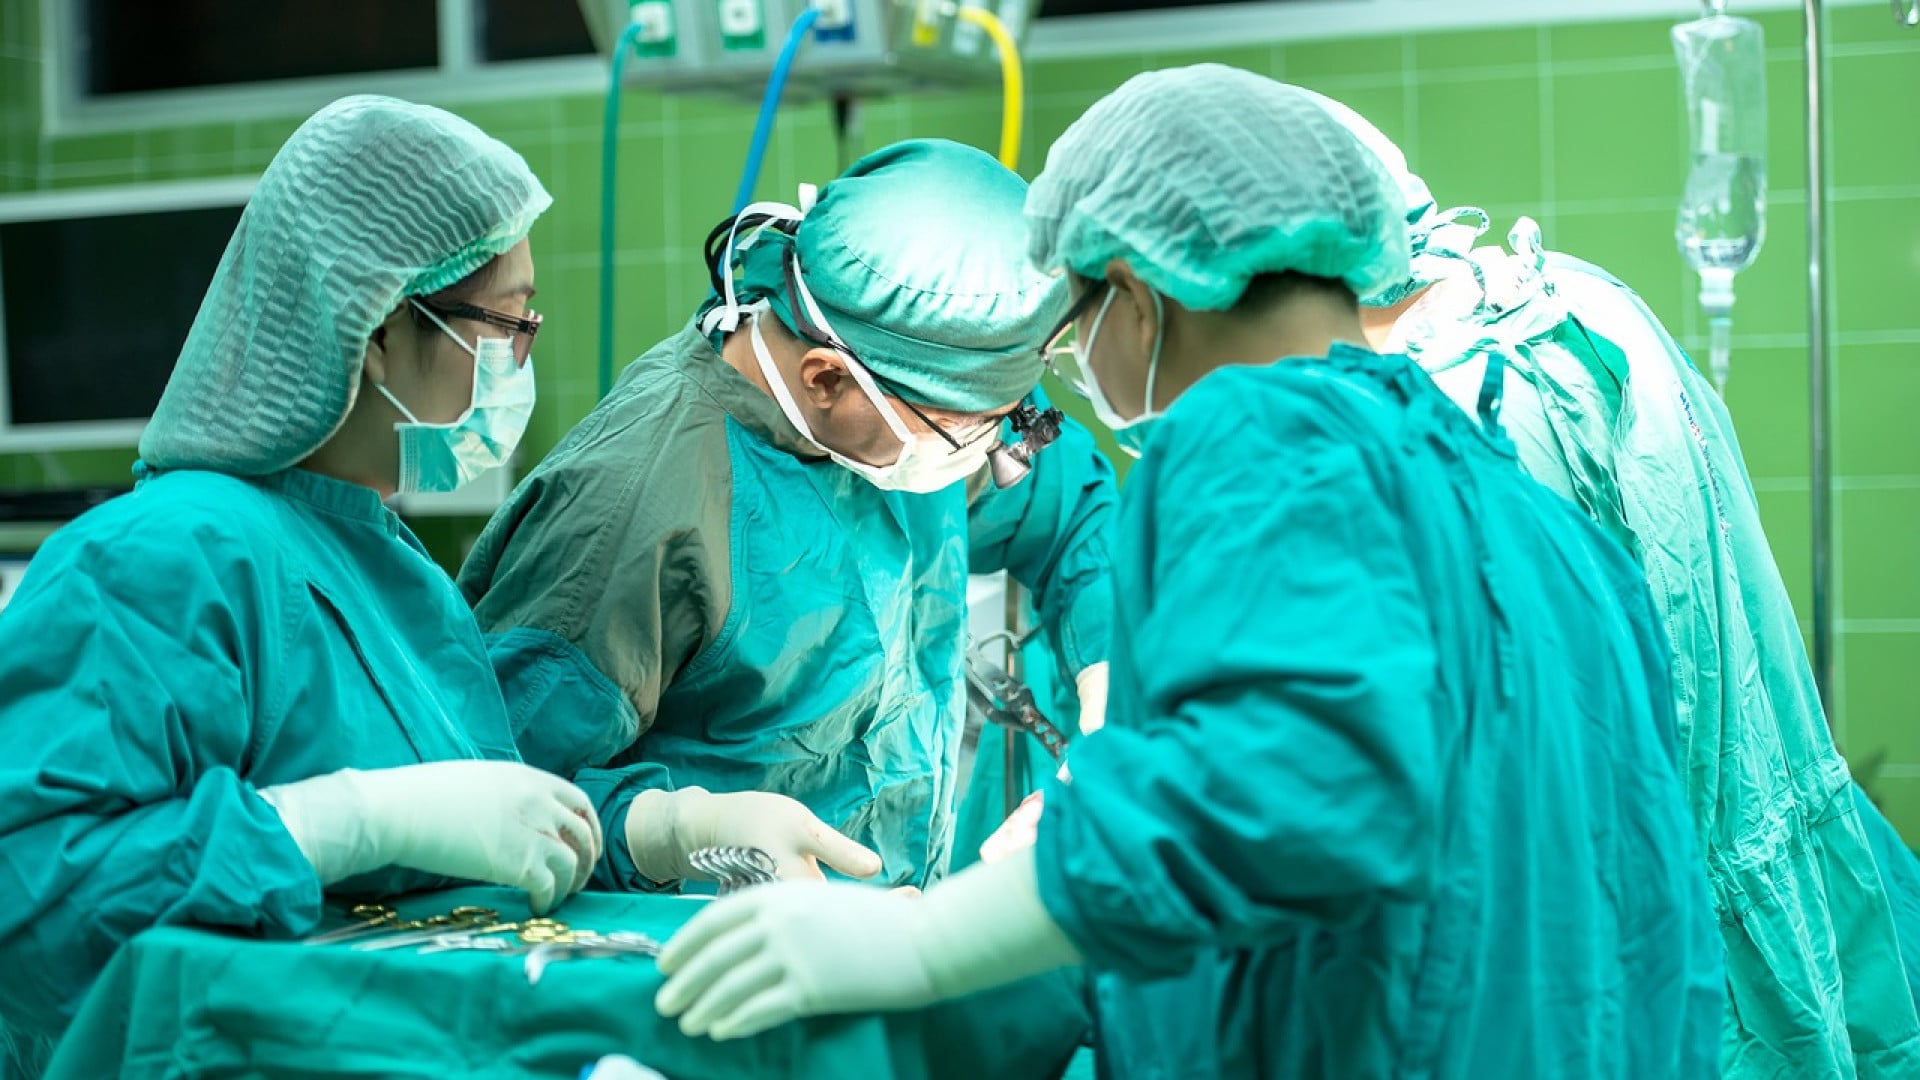 Équipe médicale effectuant une chirurgie esthétique dans une salle d'opération d'une clinique de chirurgie esthétique.